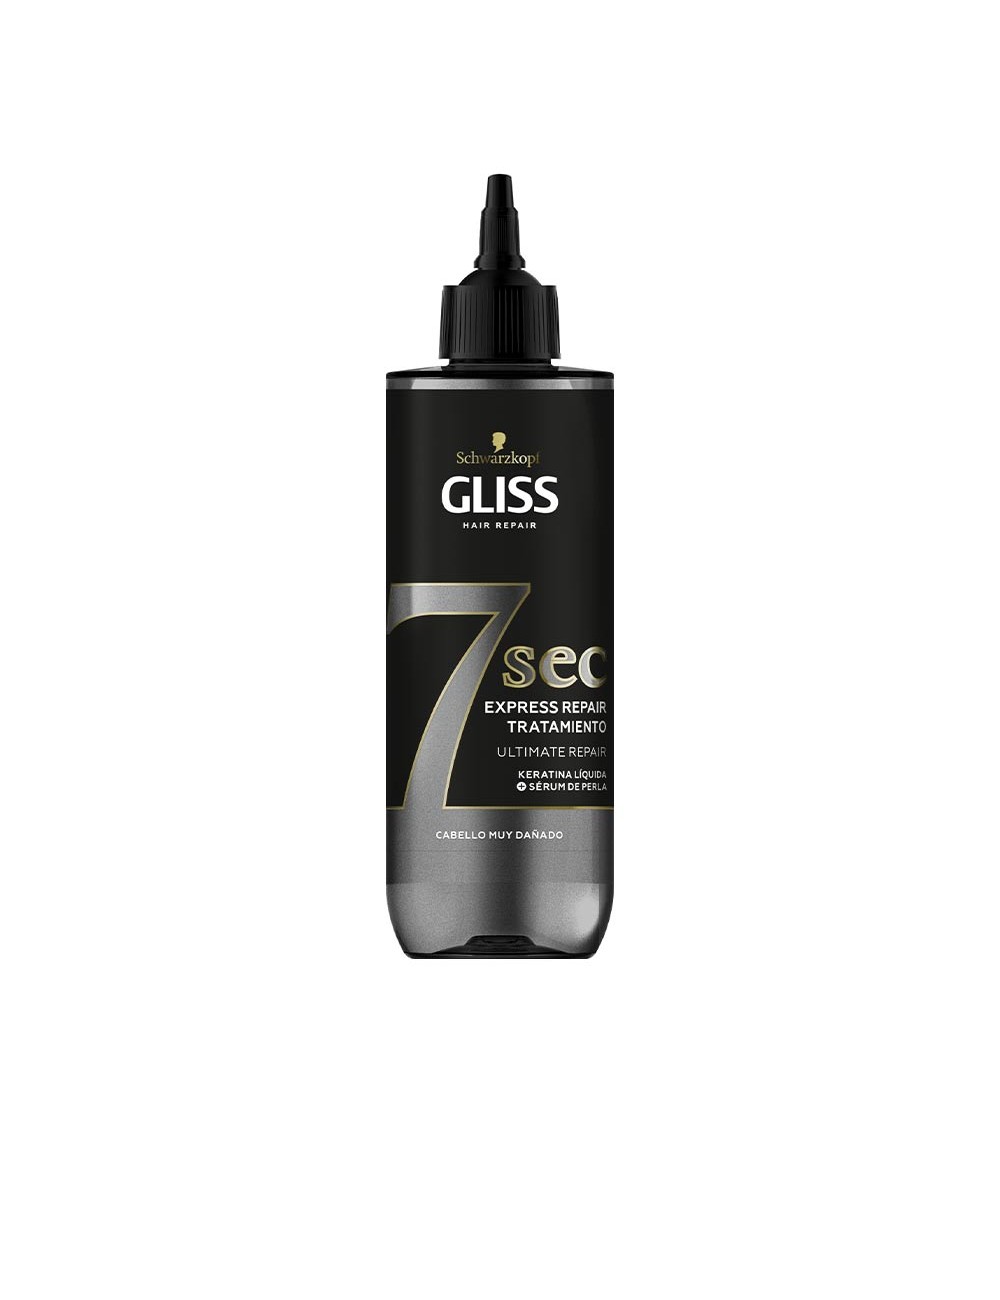 GLISS 7 SEC express repair treatment ultimate repair 200 ml